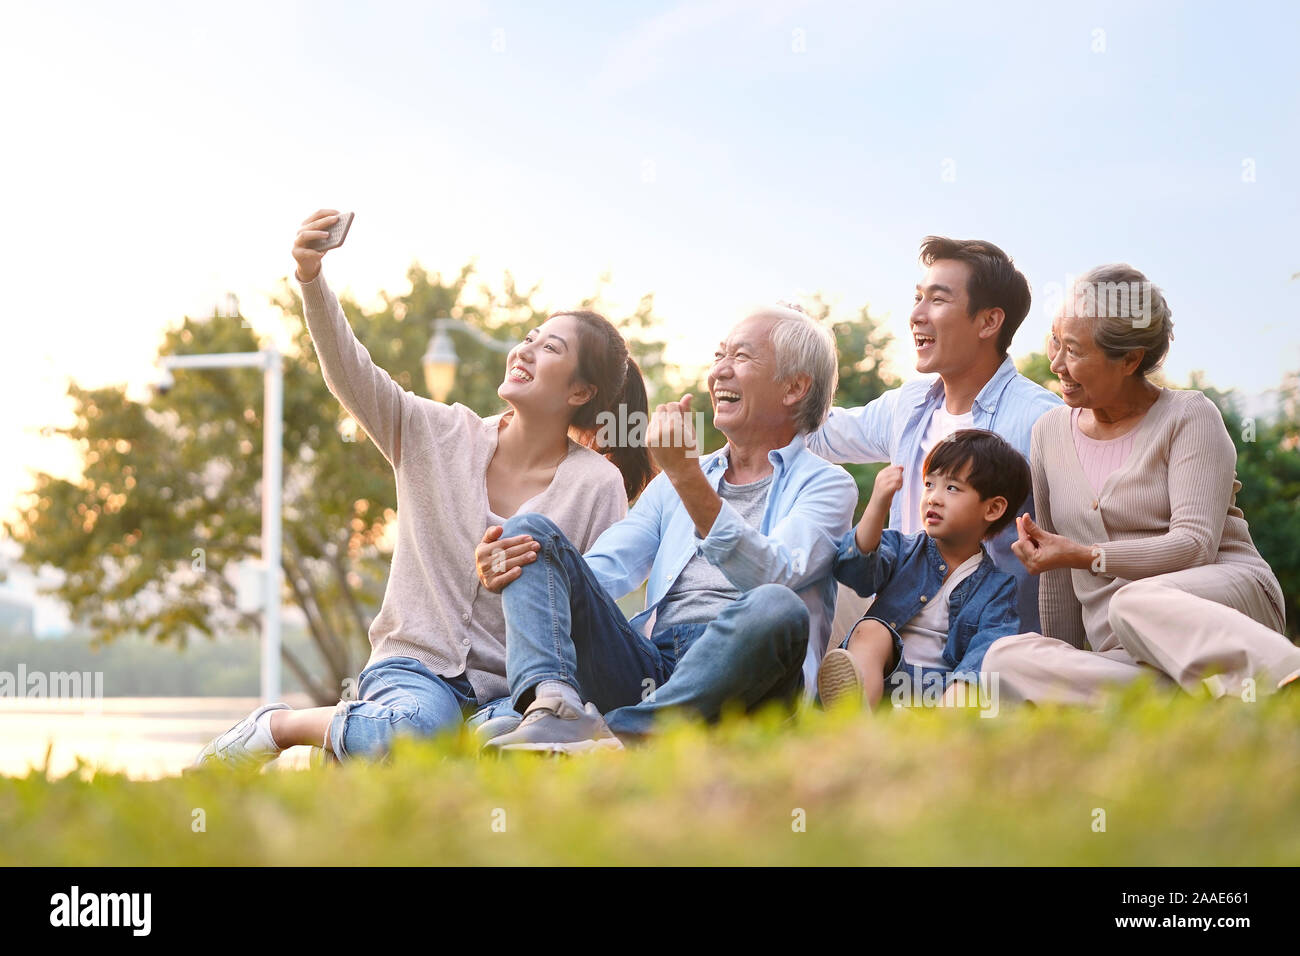 Tres generaciones de la familia de Asia felices sentados en el pasto tomando un selfie mediante teléfono móvil al aire libre en el parque Foto de stock